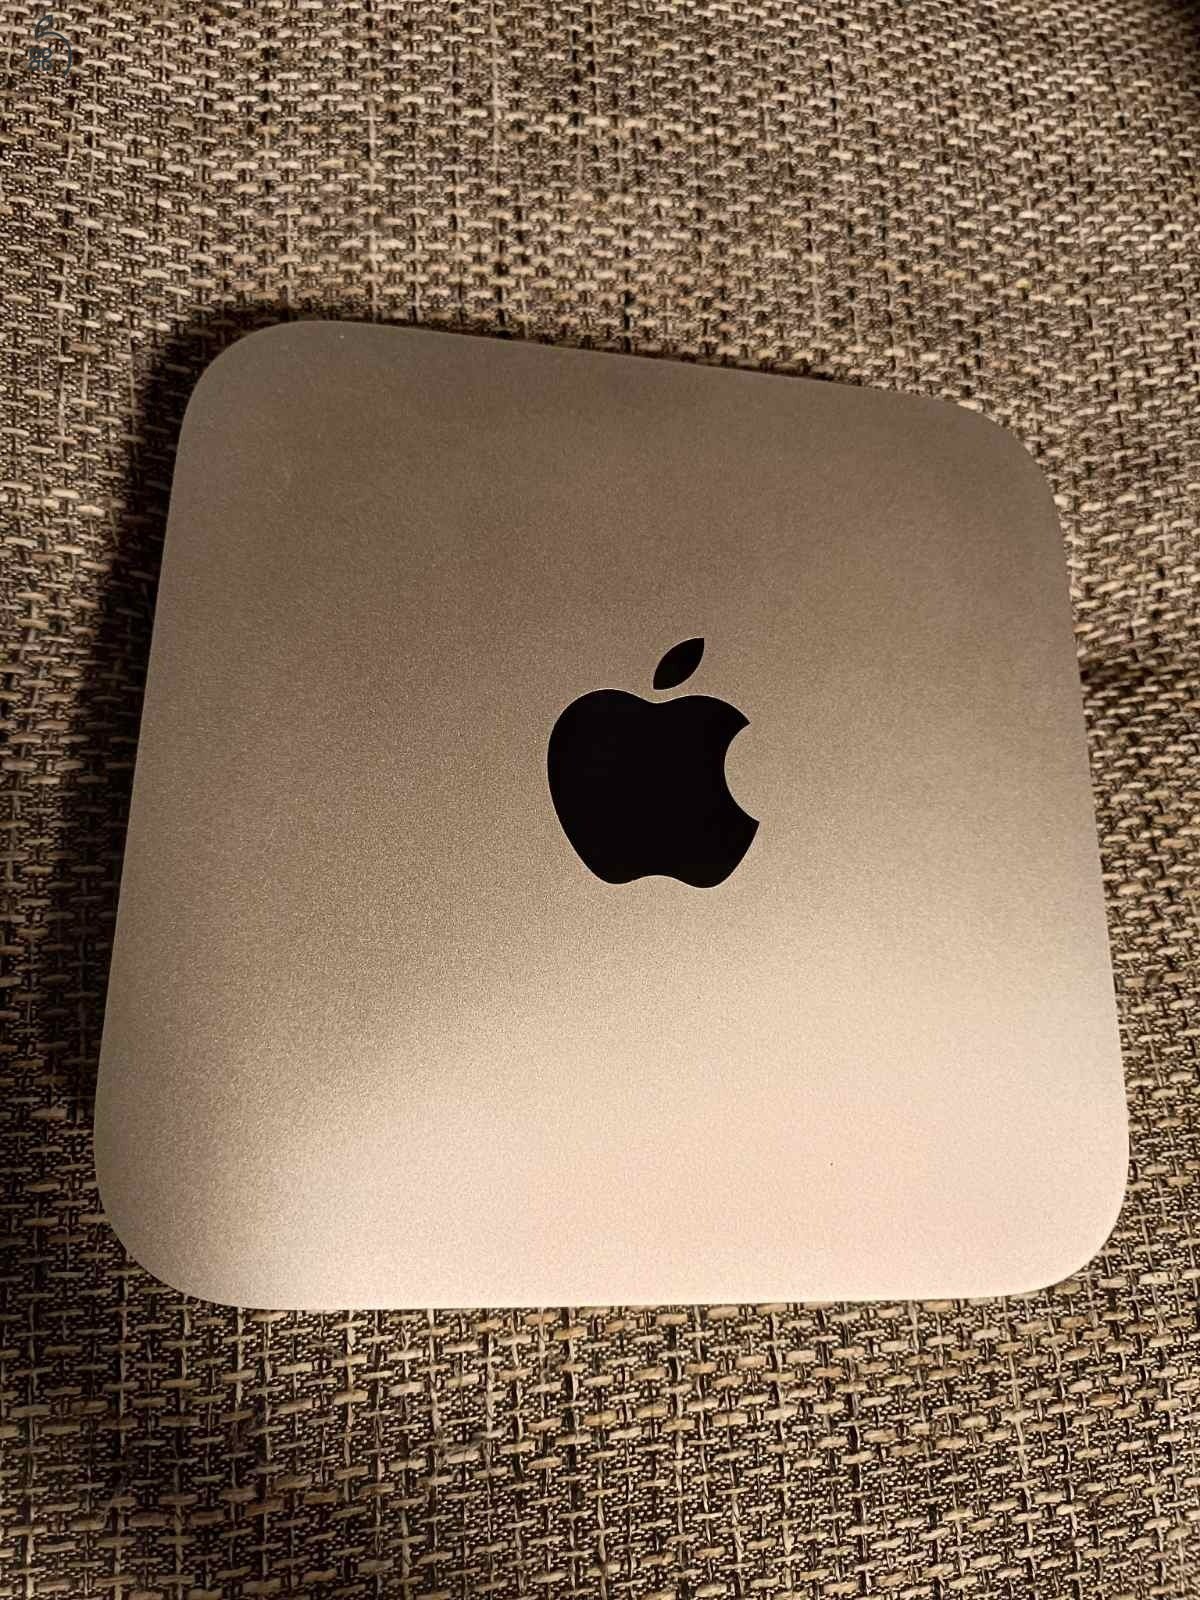 Mac Mini 2010